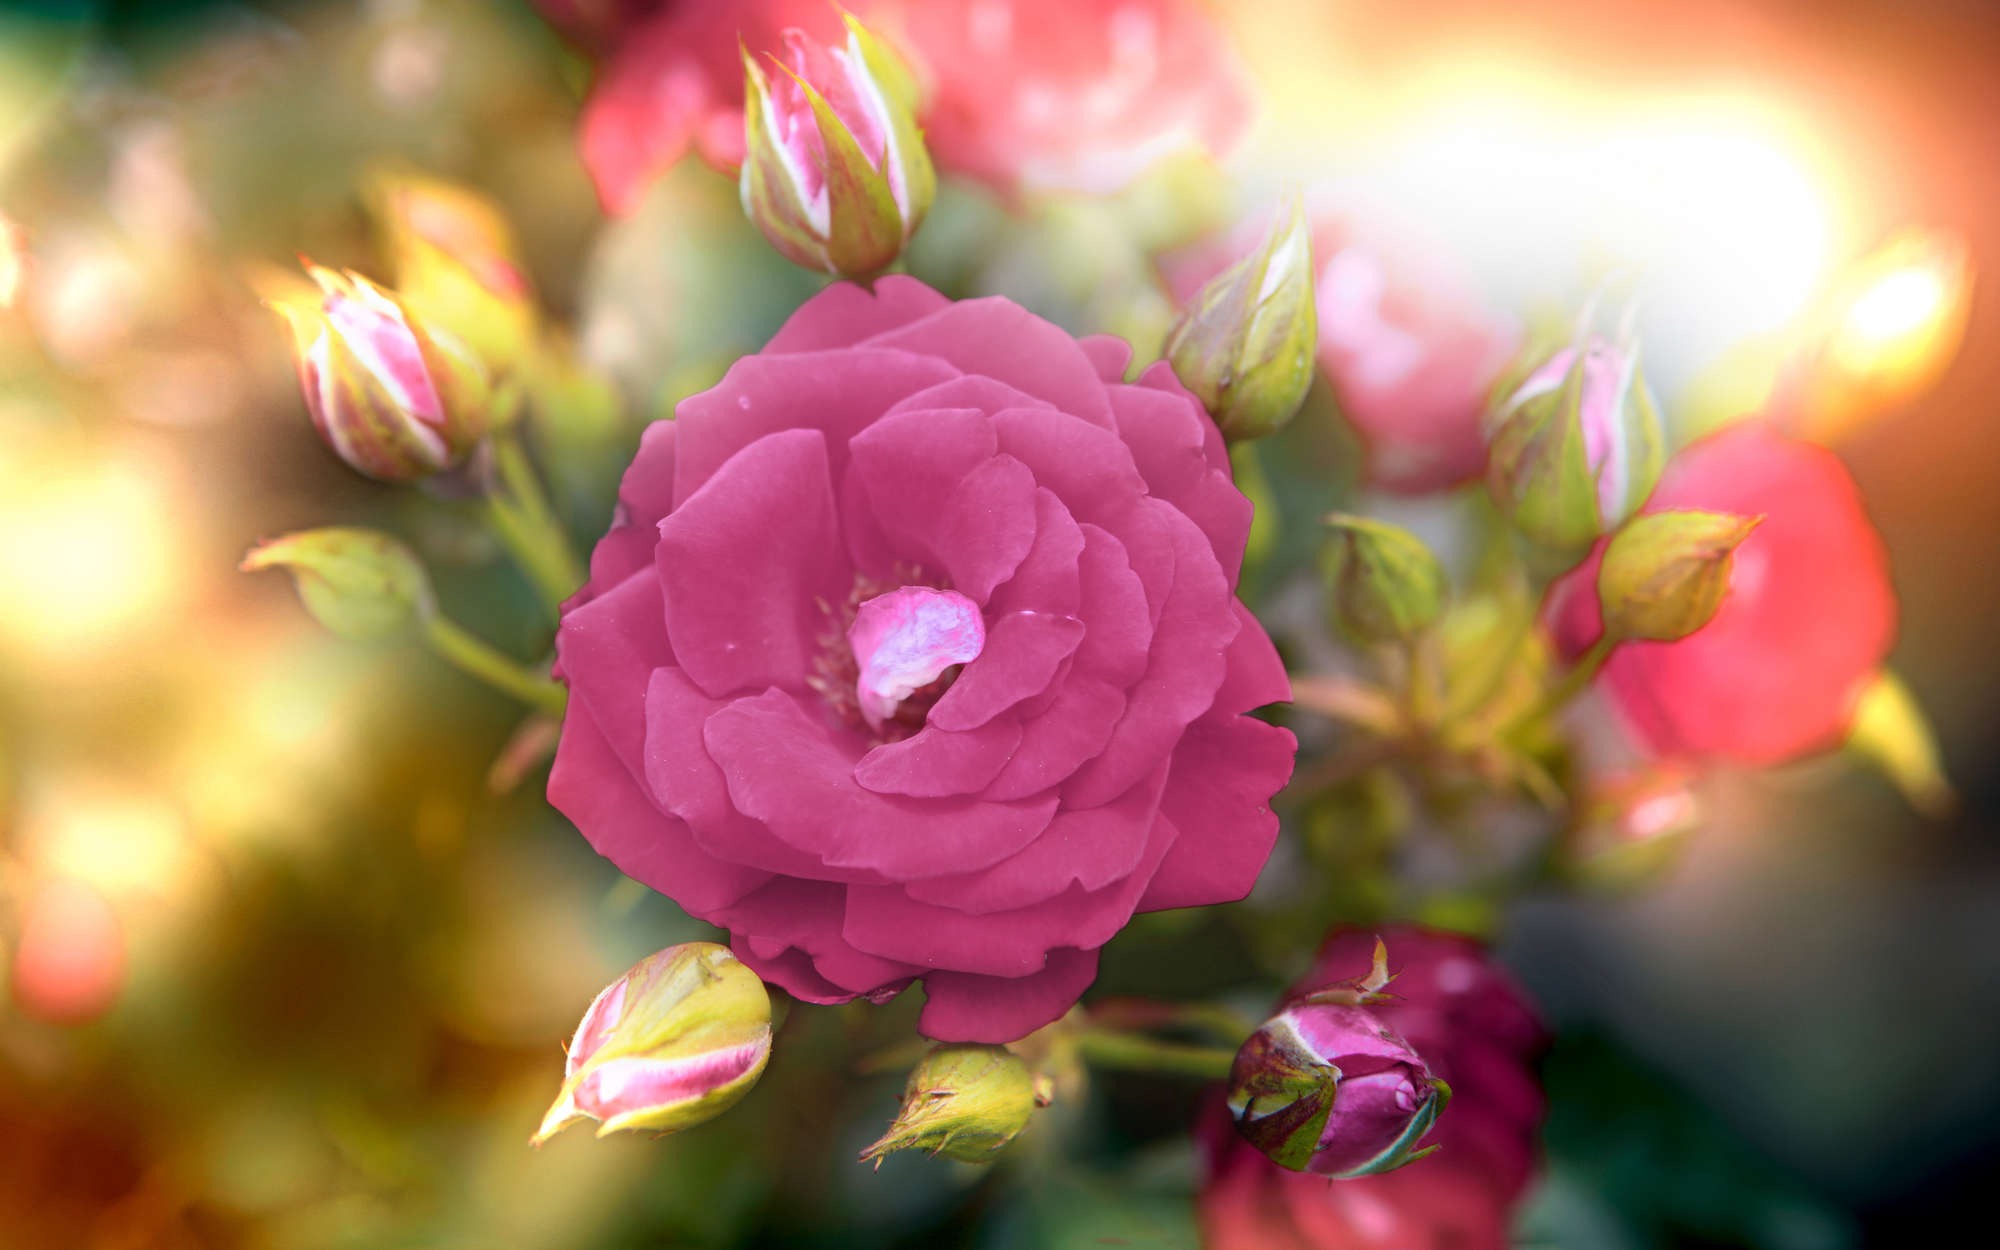             Fotomural flor con capullo en rosa - nácar liso
        